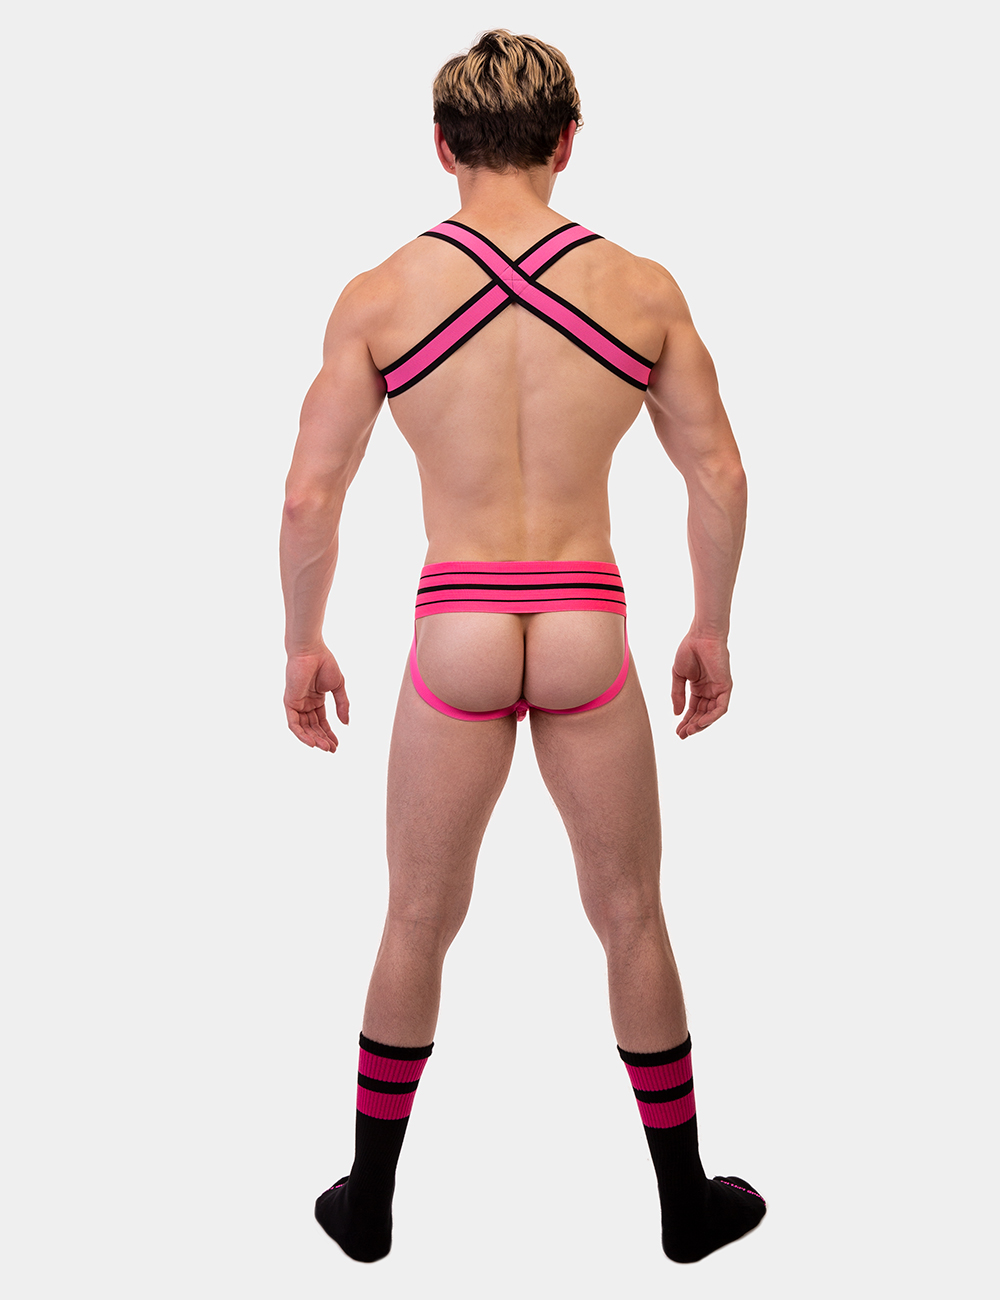 Harness  von Barcode Berlin Model " Harness Colin "  Neonpink im Gaywear Fetisch Style 